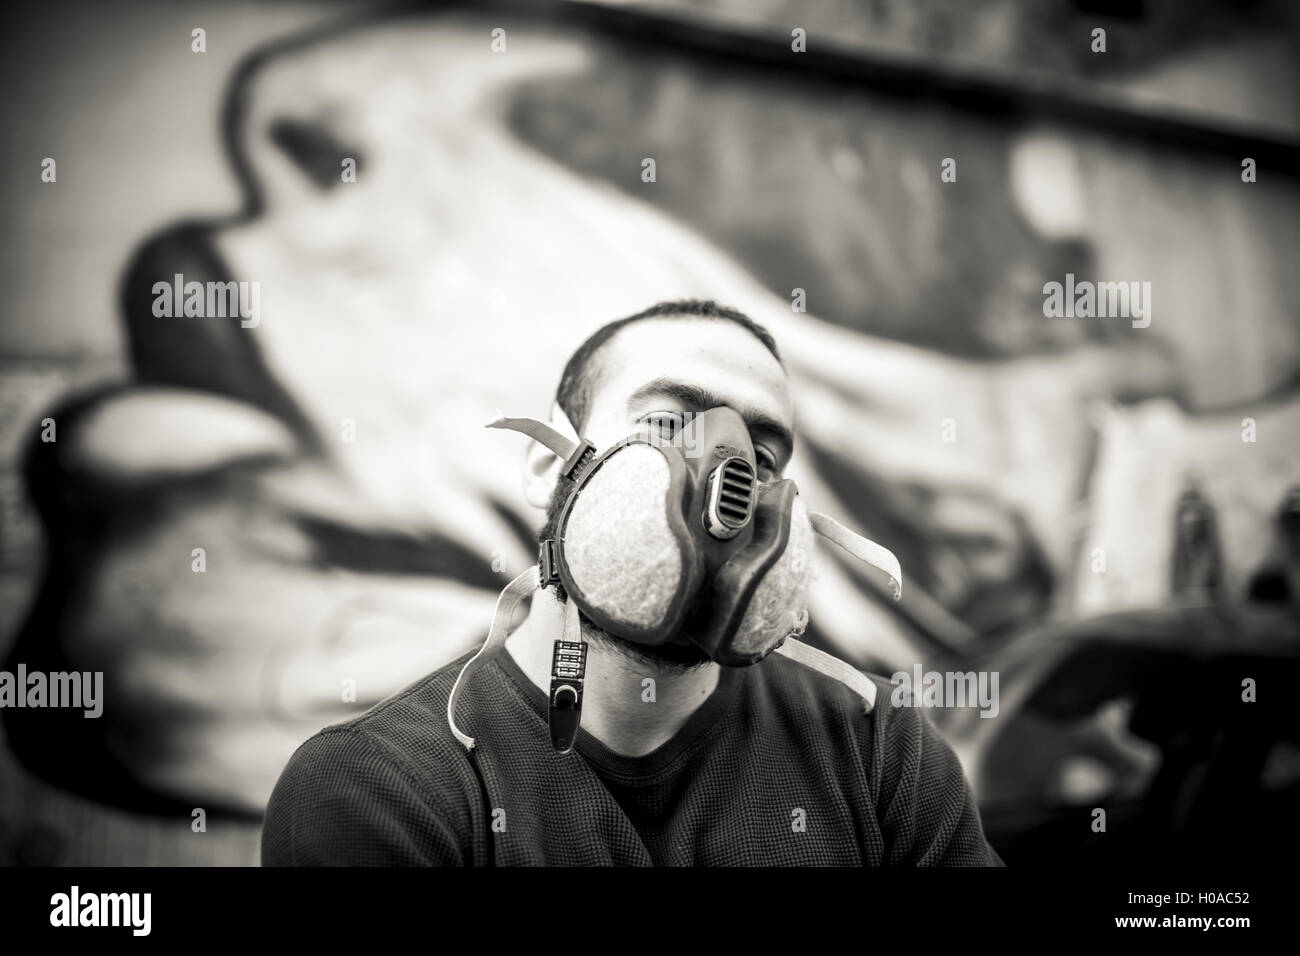 Les graffitis à Beyrouth - 10/01/2016 - Liban / Beyrouth - Portrait du Tchad le fou, en face de son art. Beyrouth, jan 2016. - Bilal Tarabey / Le Pictorium Banque D'Images